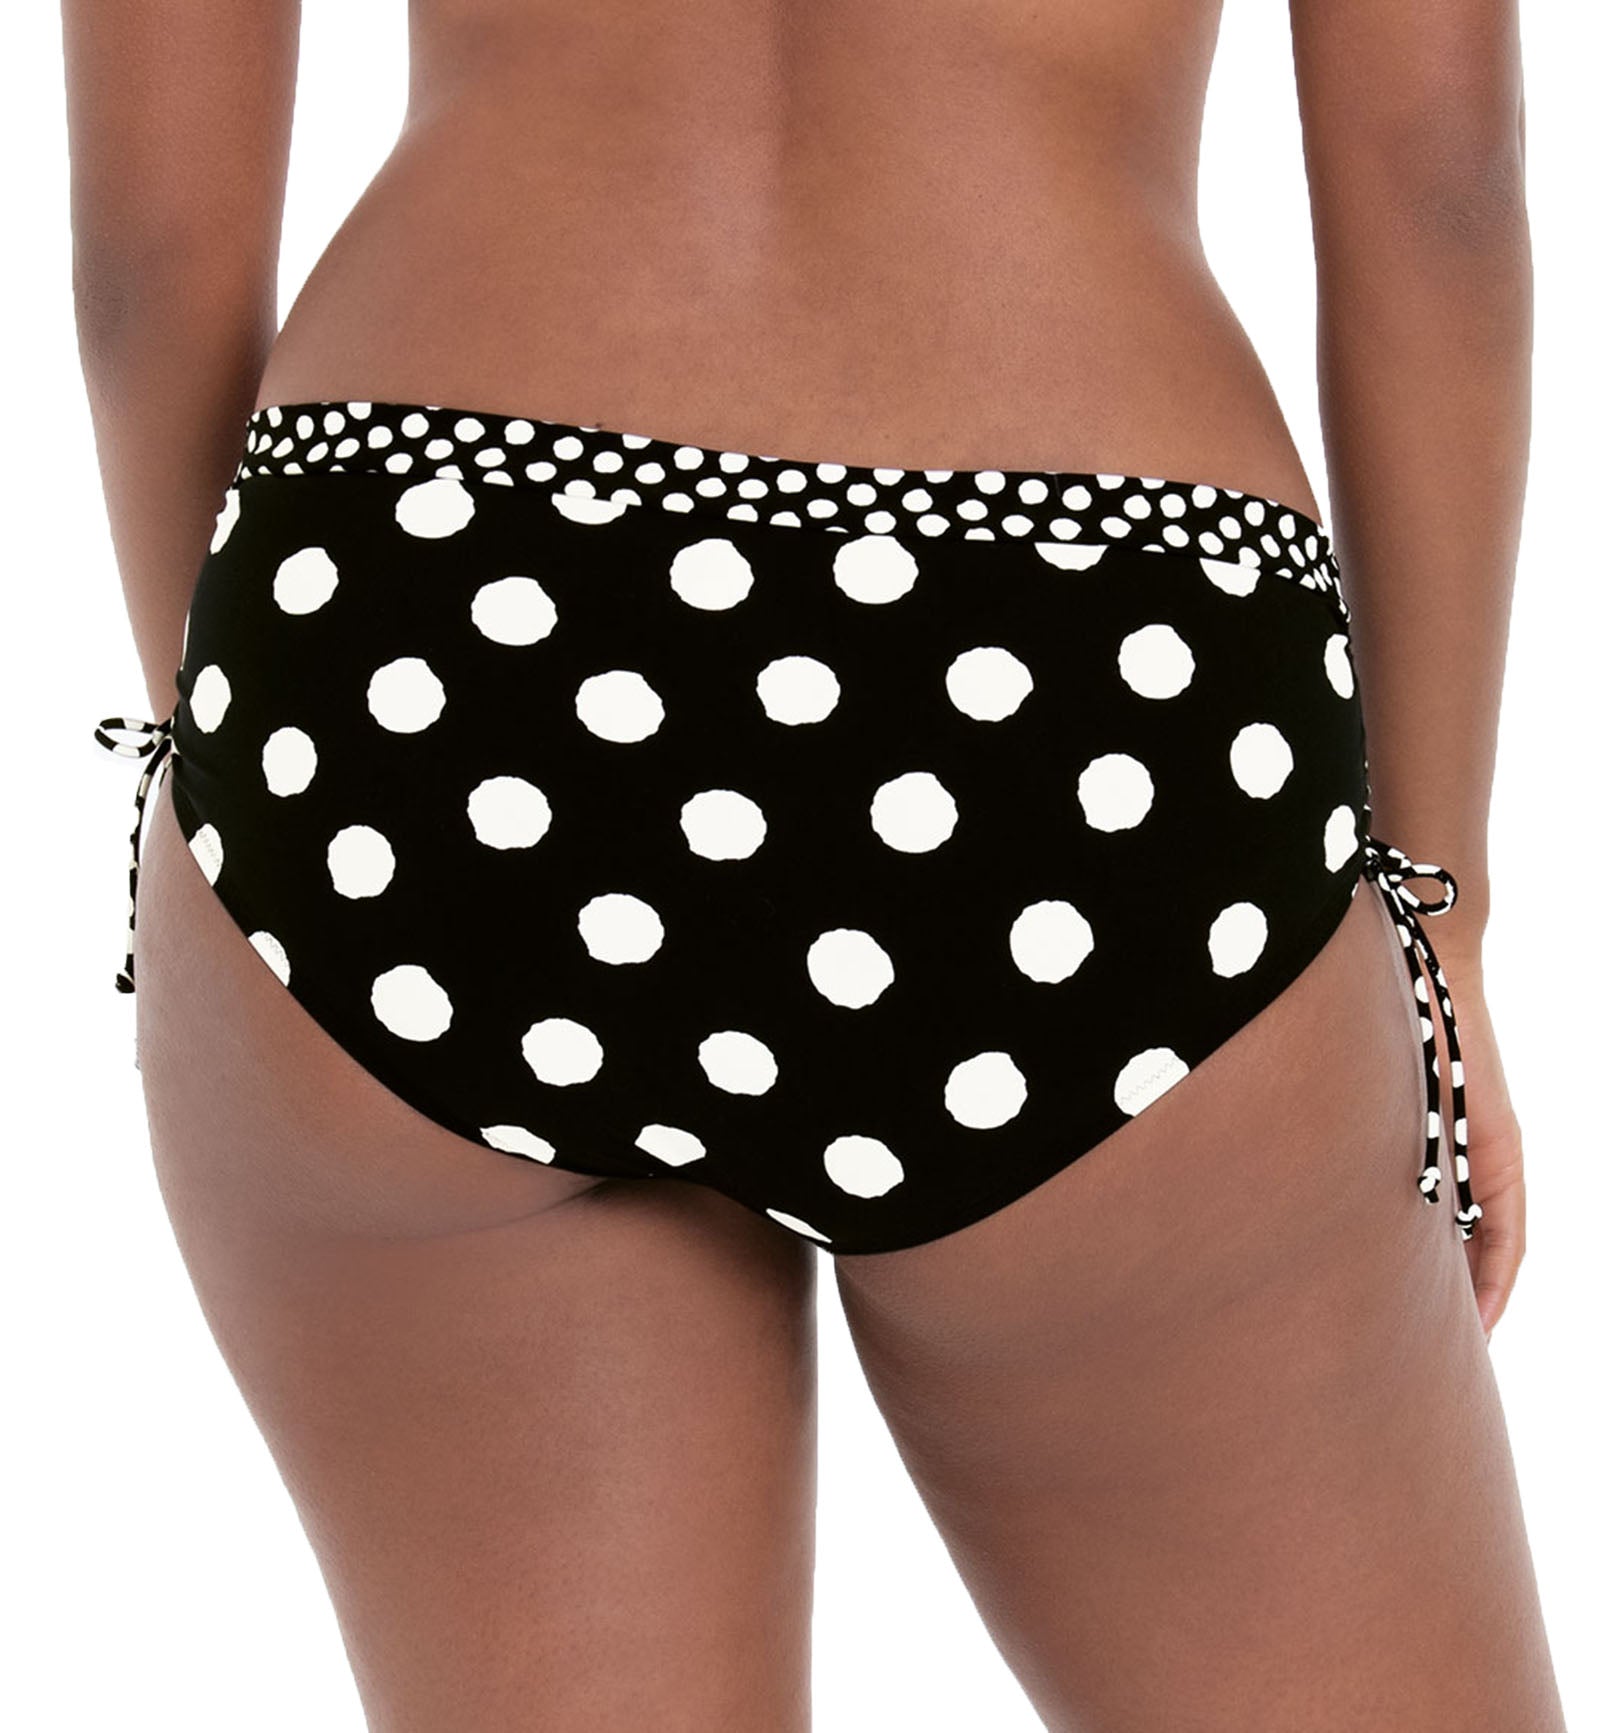 Anita Summer Dot Ebru Adjustable Side Hipster Swim Bottom (8810-0),Small,Black/White - Black/White,Small